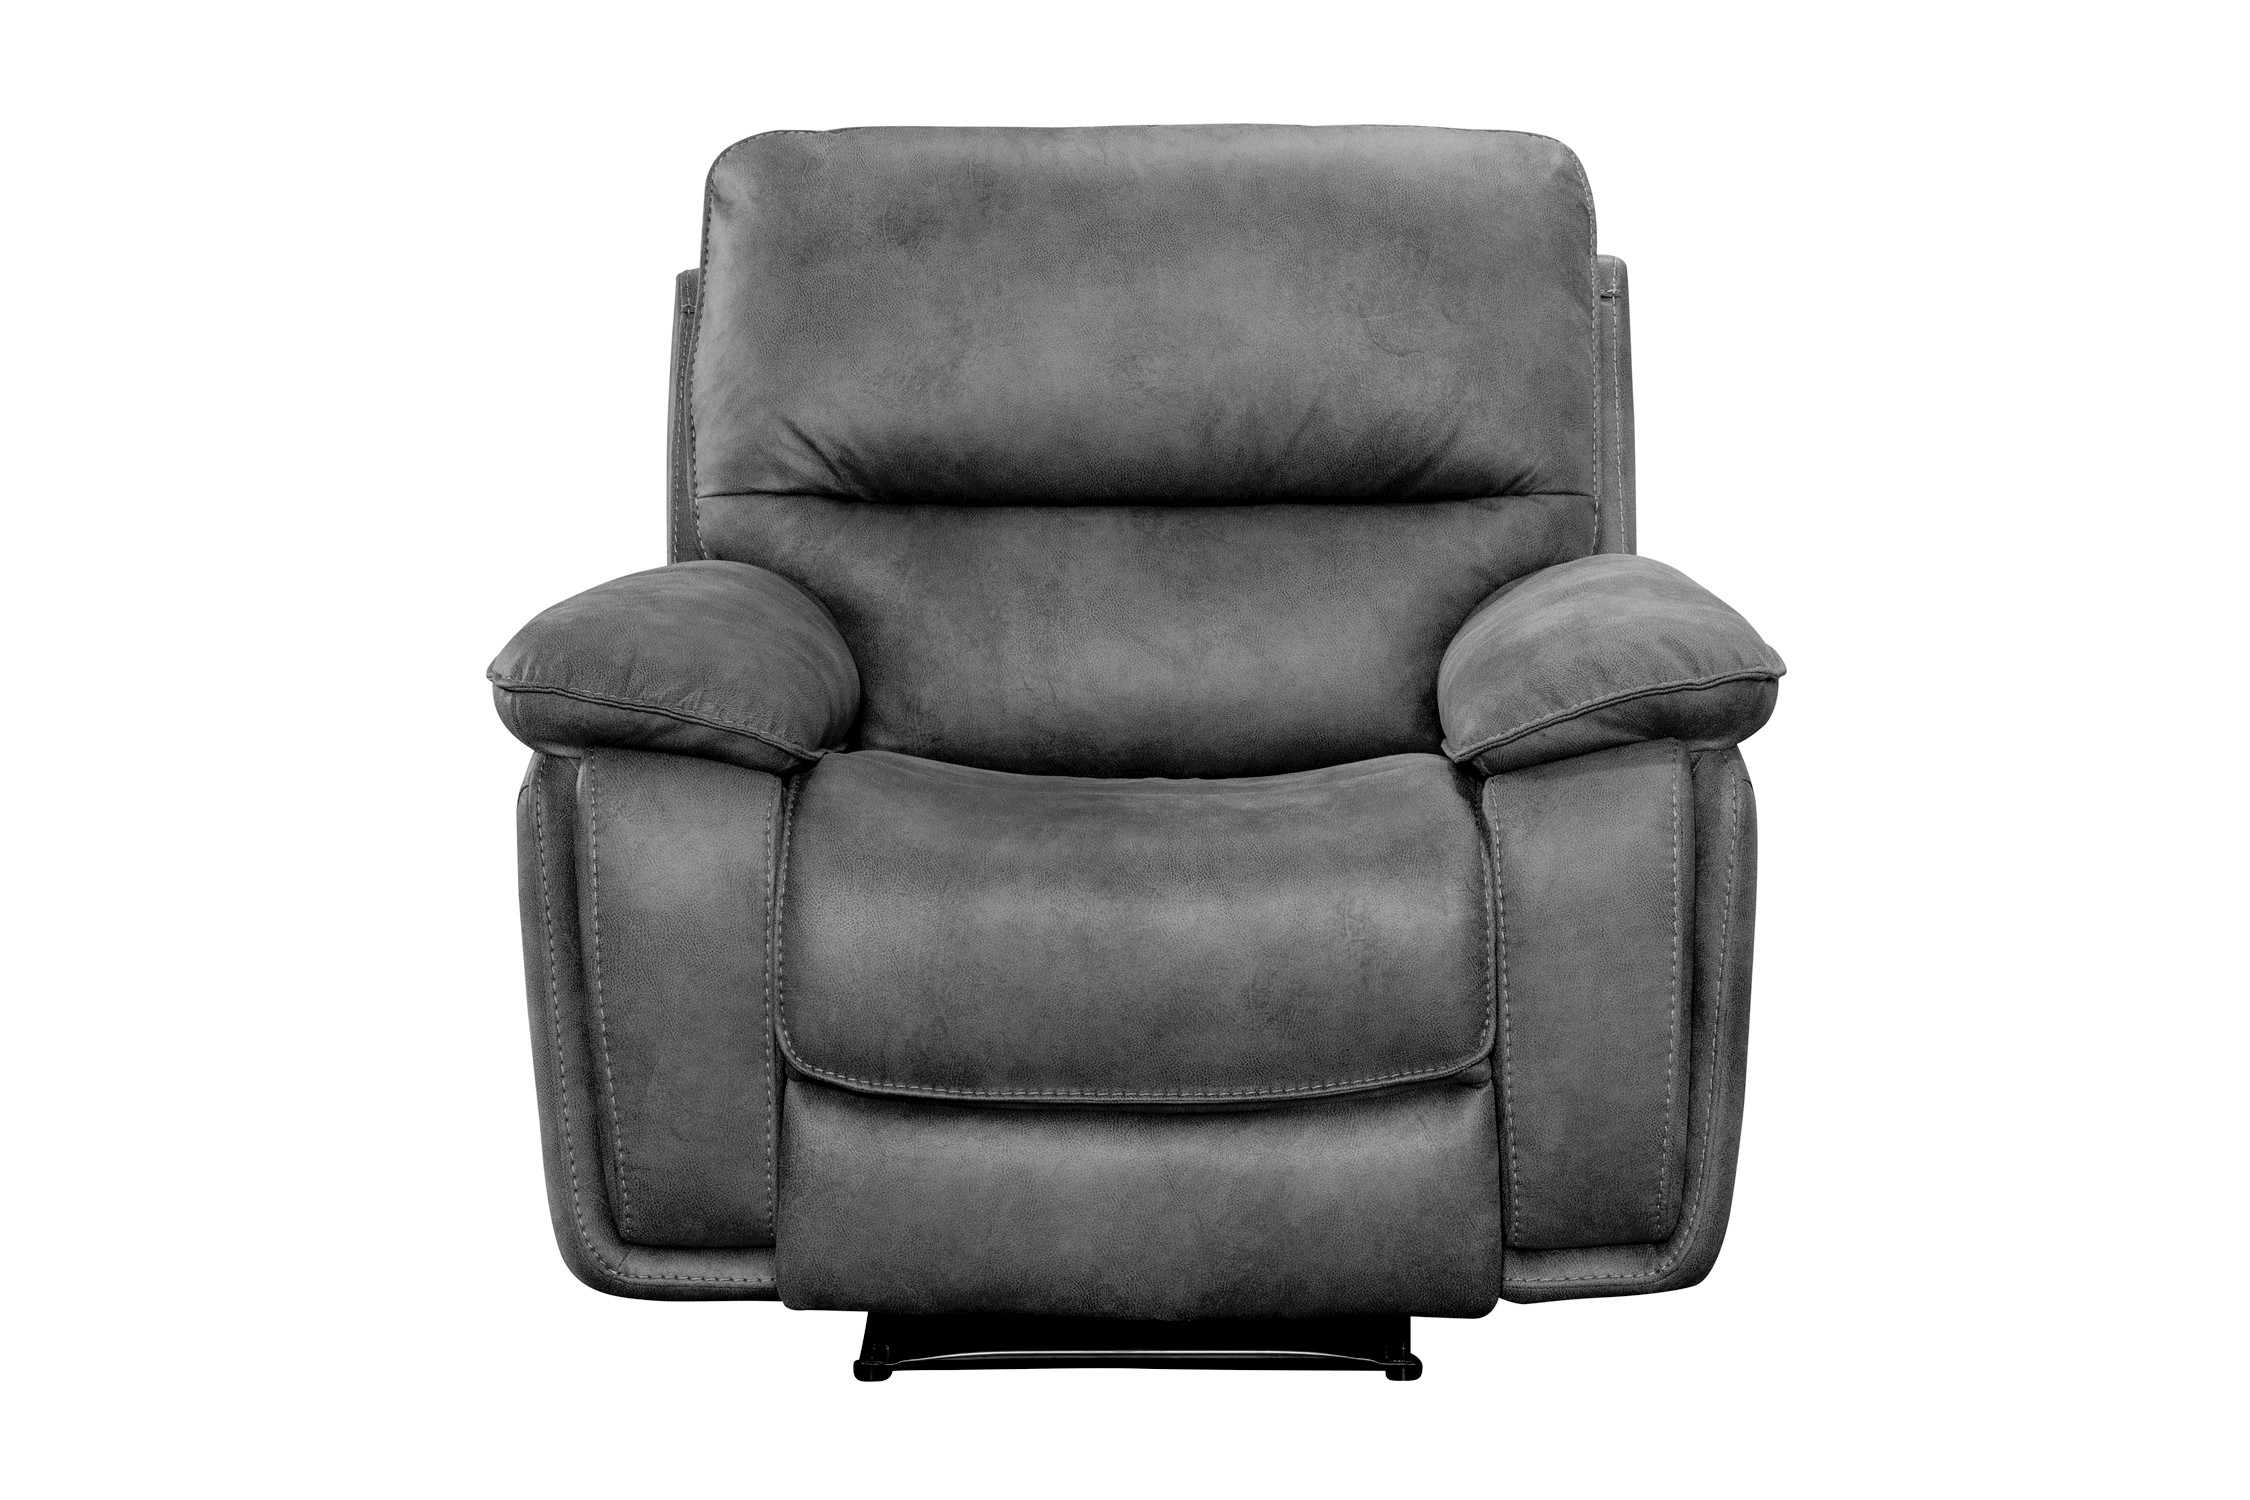 Monzo recliner armchair in brown